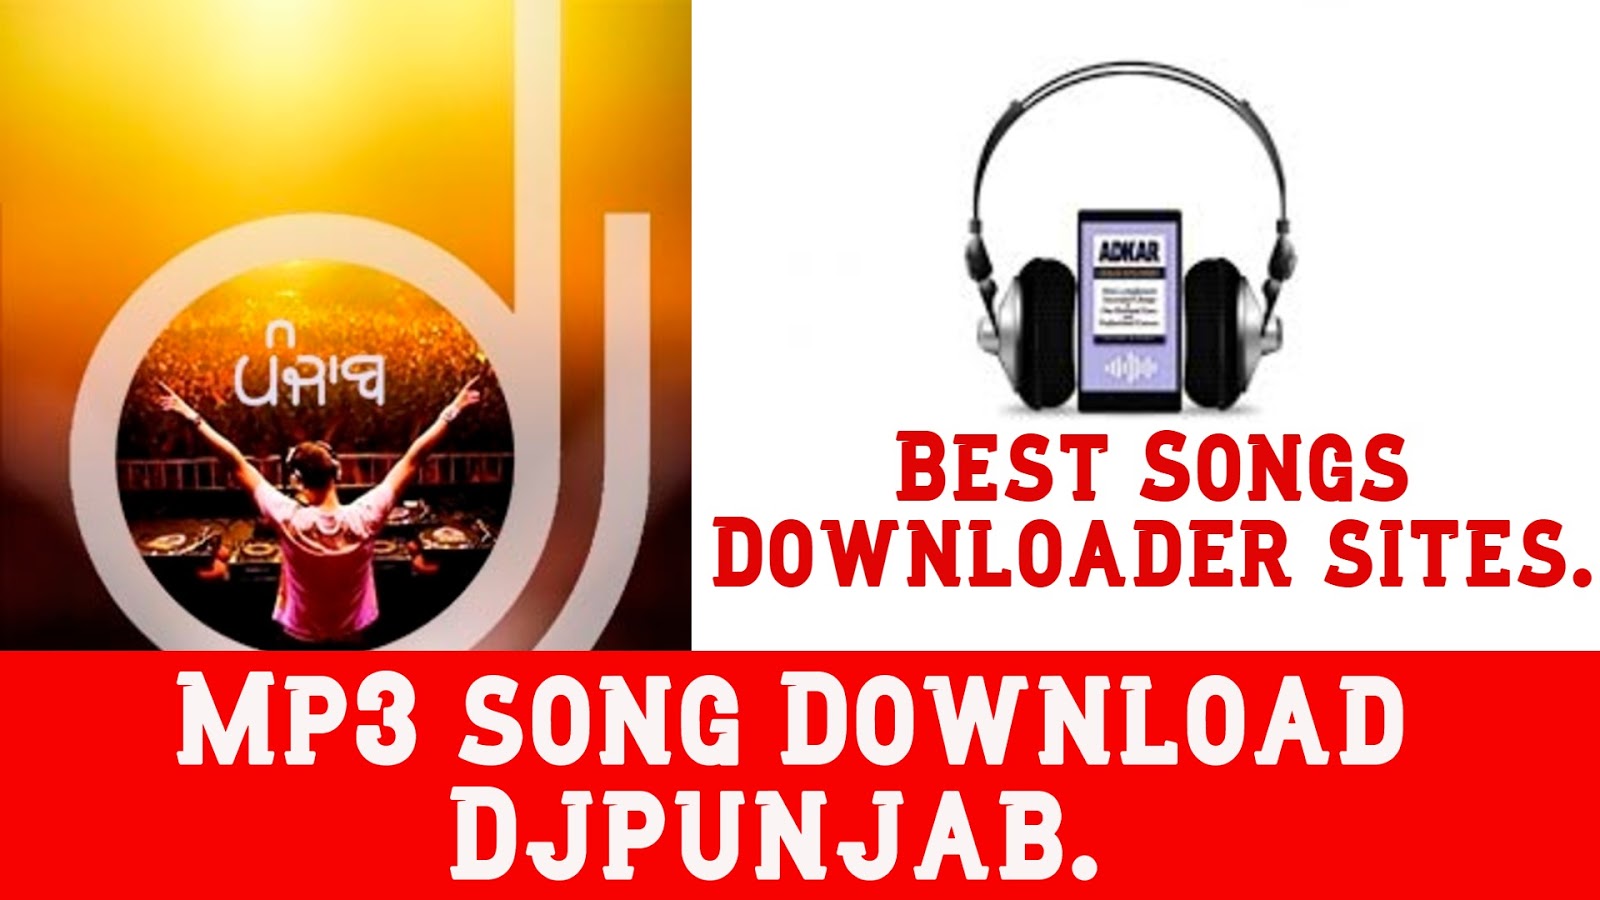 Free Mp3 Song Download Djpunjab Case Study